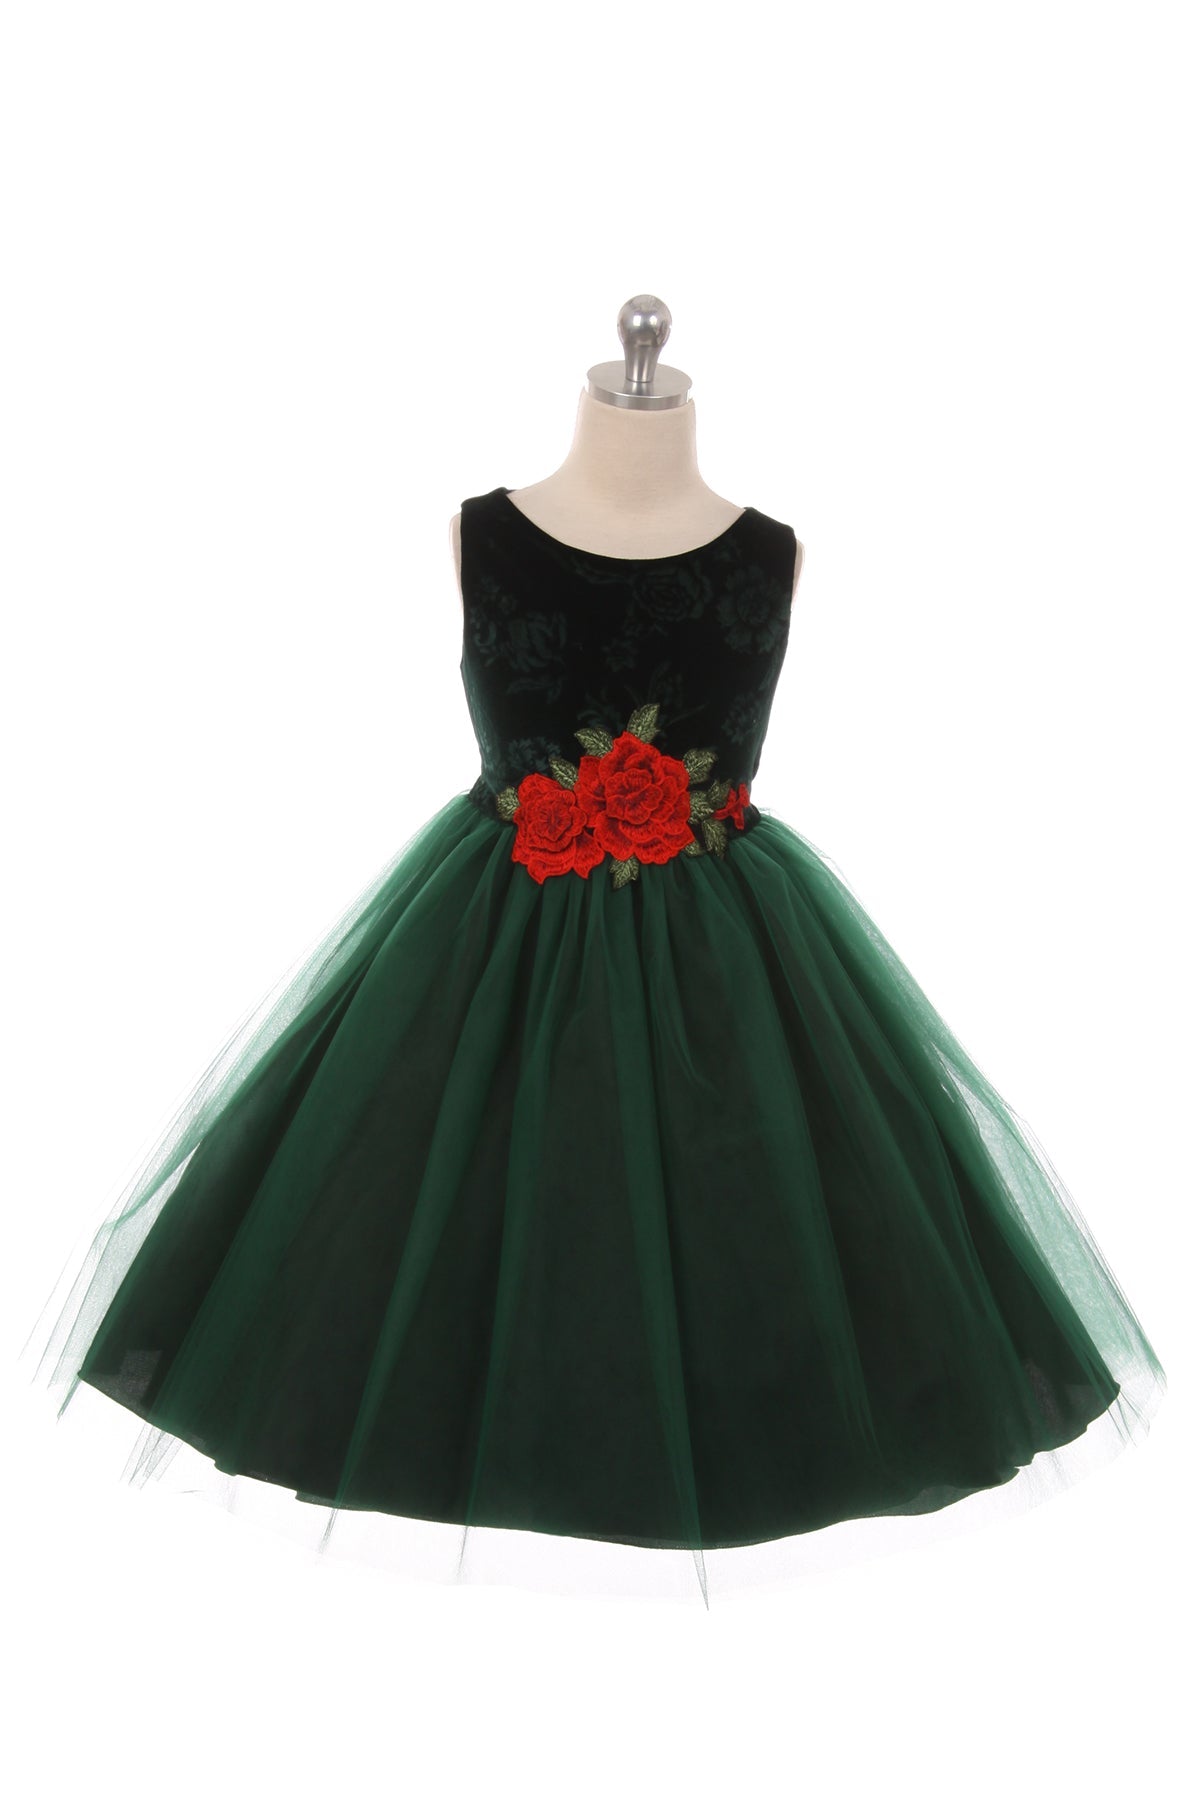 Dress - Velvet Rose Patch Girl Dress